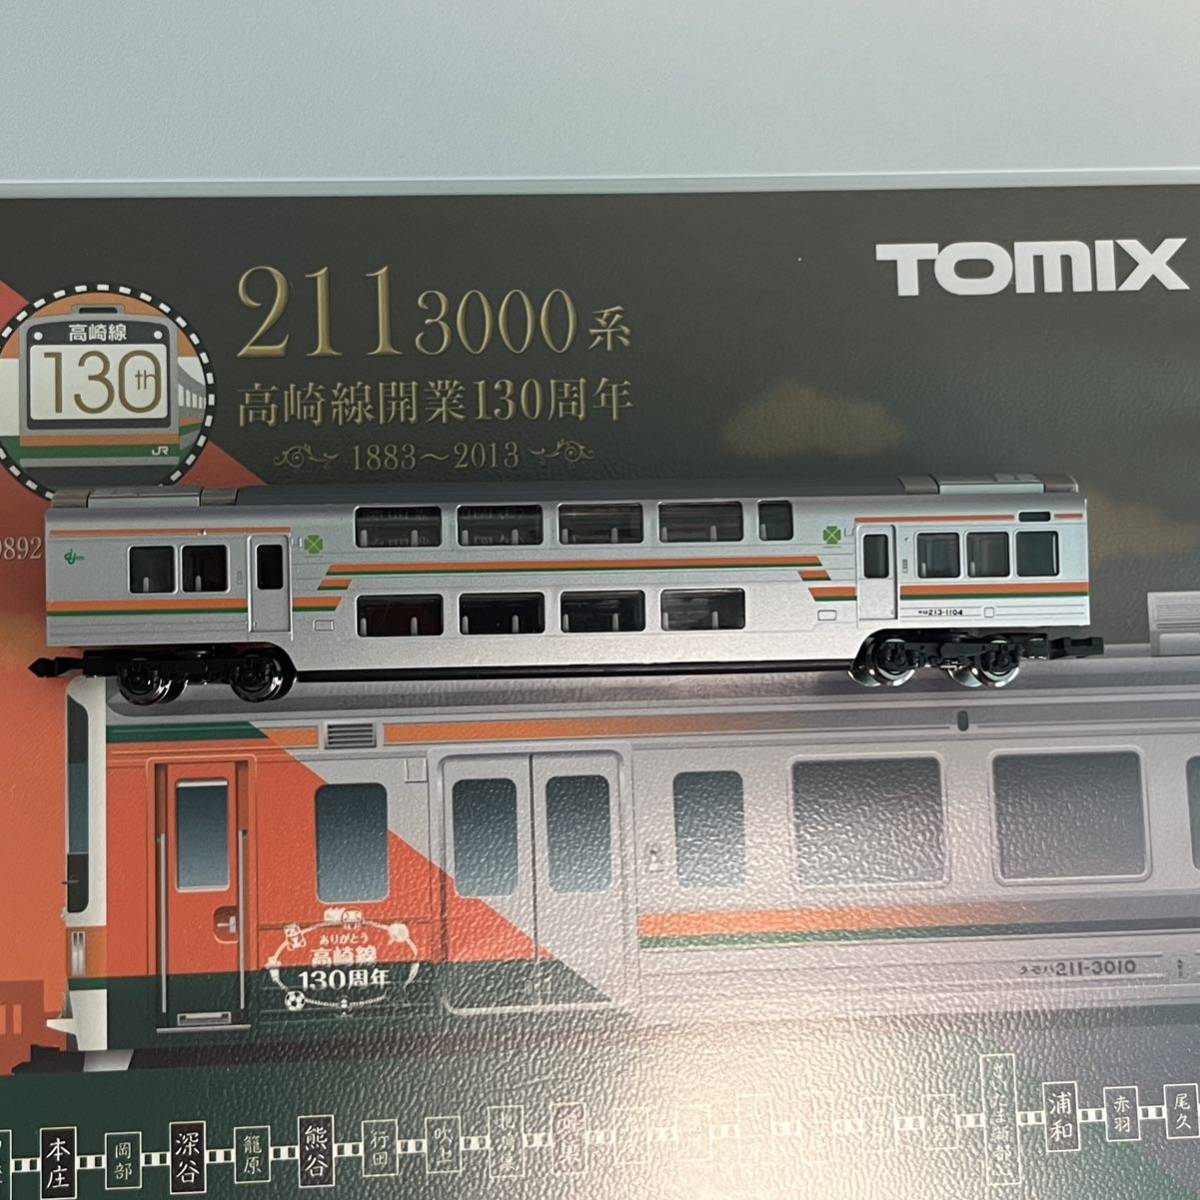 TOMIX 98921 JR 211 3000系近郊電車(高崎線開業130周年) 10両セット 